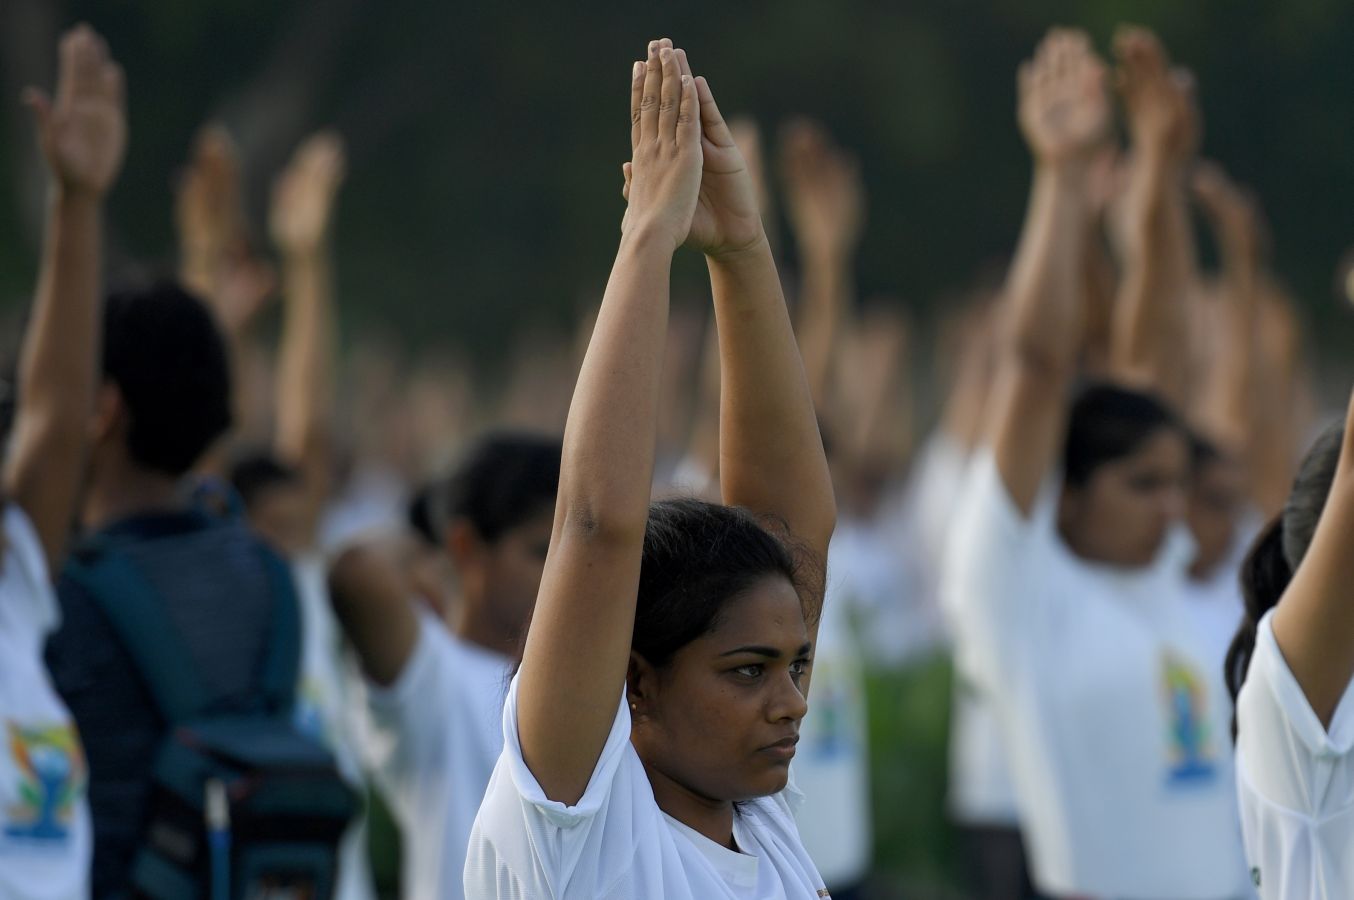 Este viernes se ha celebrado el Día Internacional del Yoga en todas las partes del mundo. Desde 2014 la ONU oficializó el 21 de junio como el Día Internacional del Yoga y cada vez son más las personas que participan. Actualmente más de 500 millones de personas practican yoga en el mundo. Una disciplina que suma adeptos gracias a la cantidad de beneficios que aporta en mente y cuerpo. 